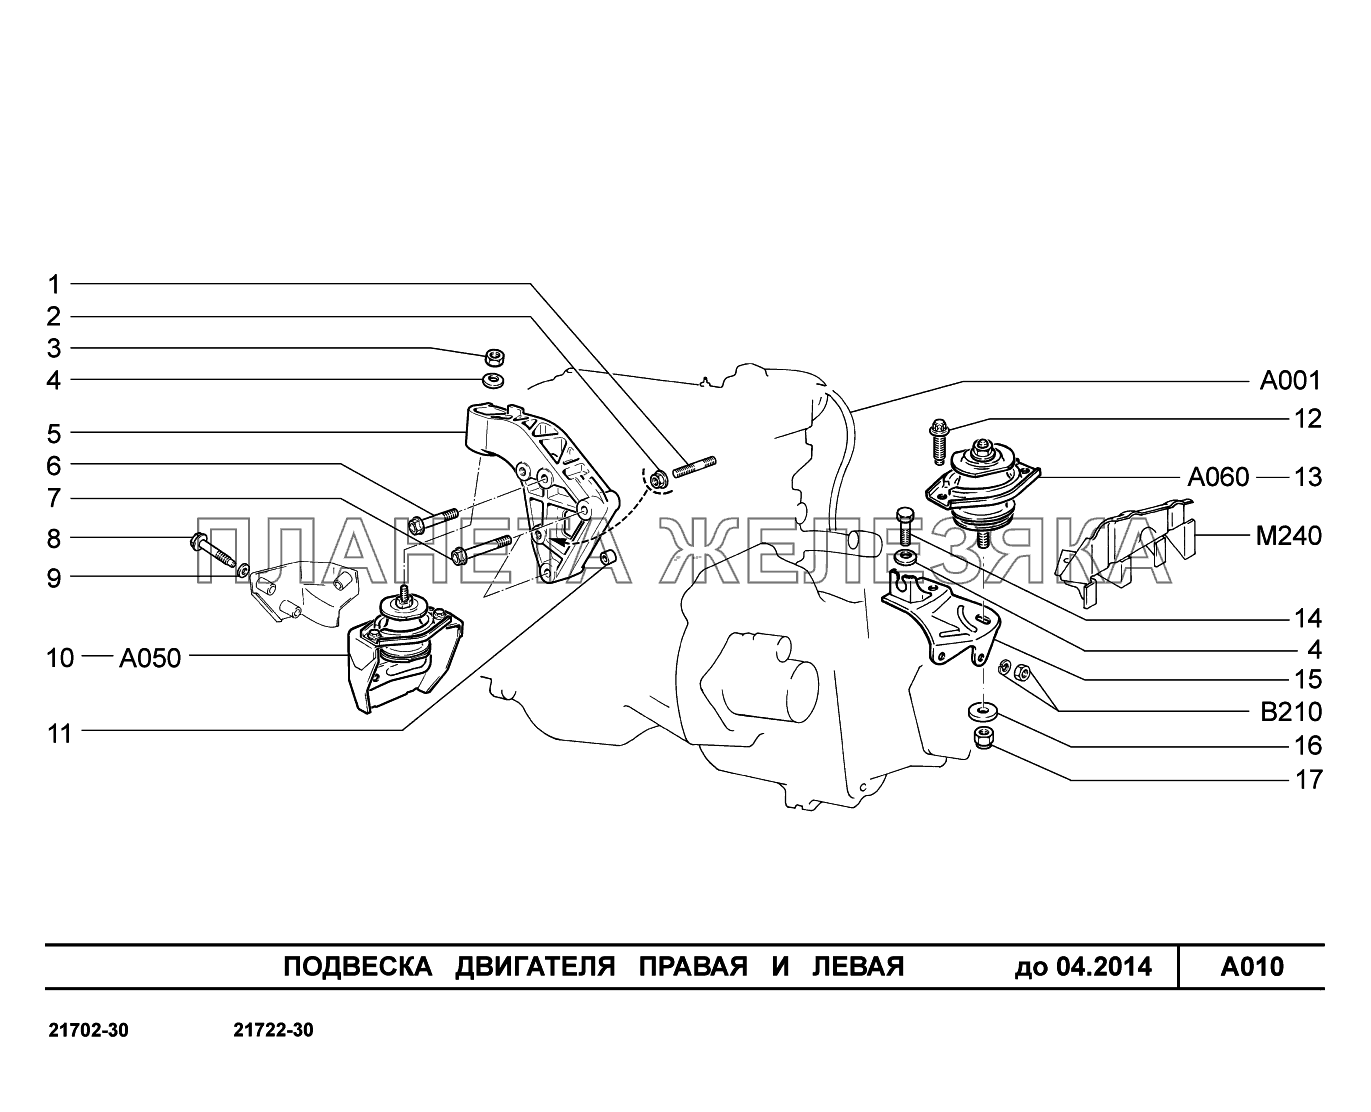 A010. Подвеска двигателя правая и левая ВАЗ-2170 